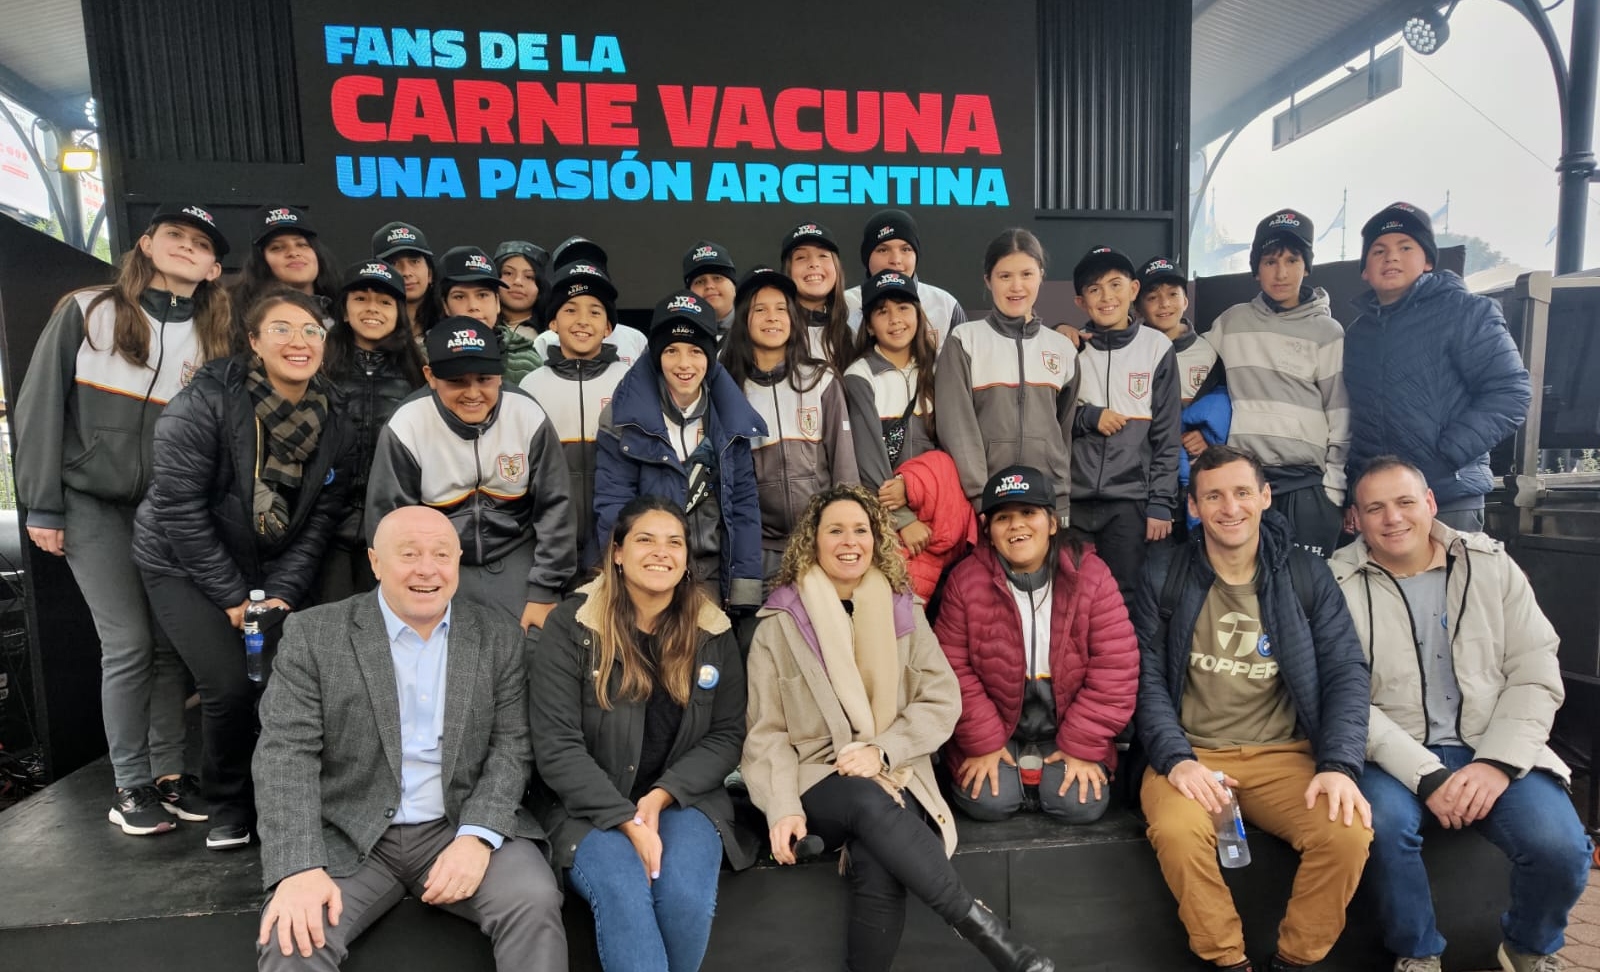 IPCVA: Los fans de la carne vacuna llegaron desde Córdoba